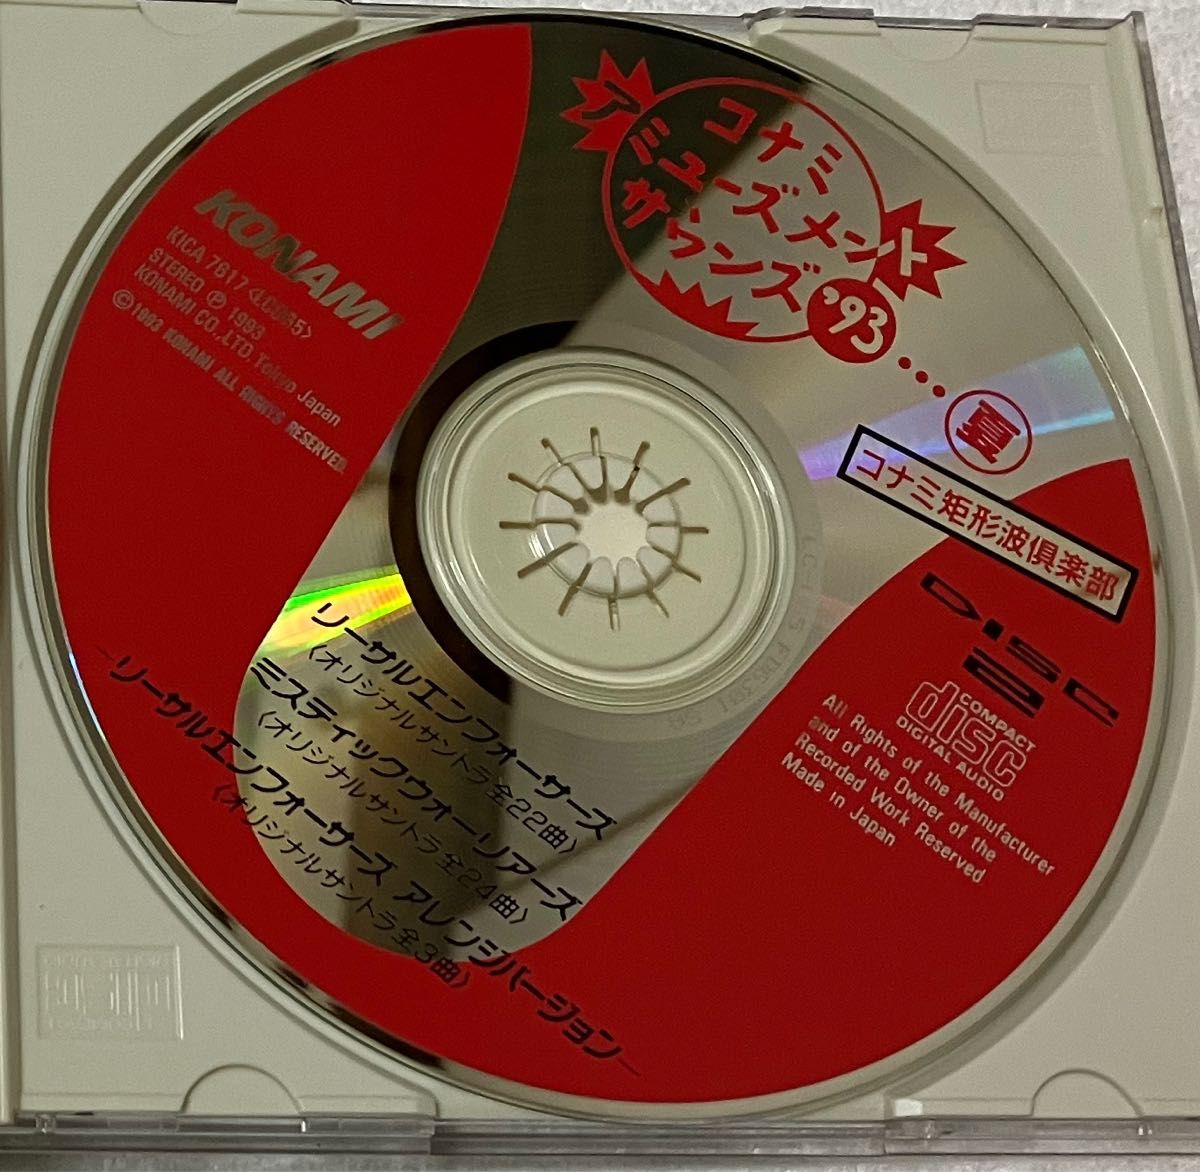 コナミ アミューズメントサウンドズ’93夏 [CD]